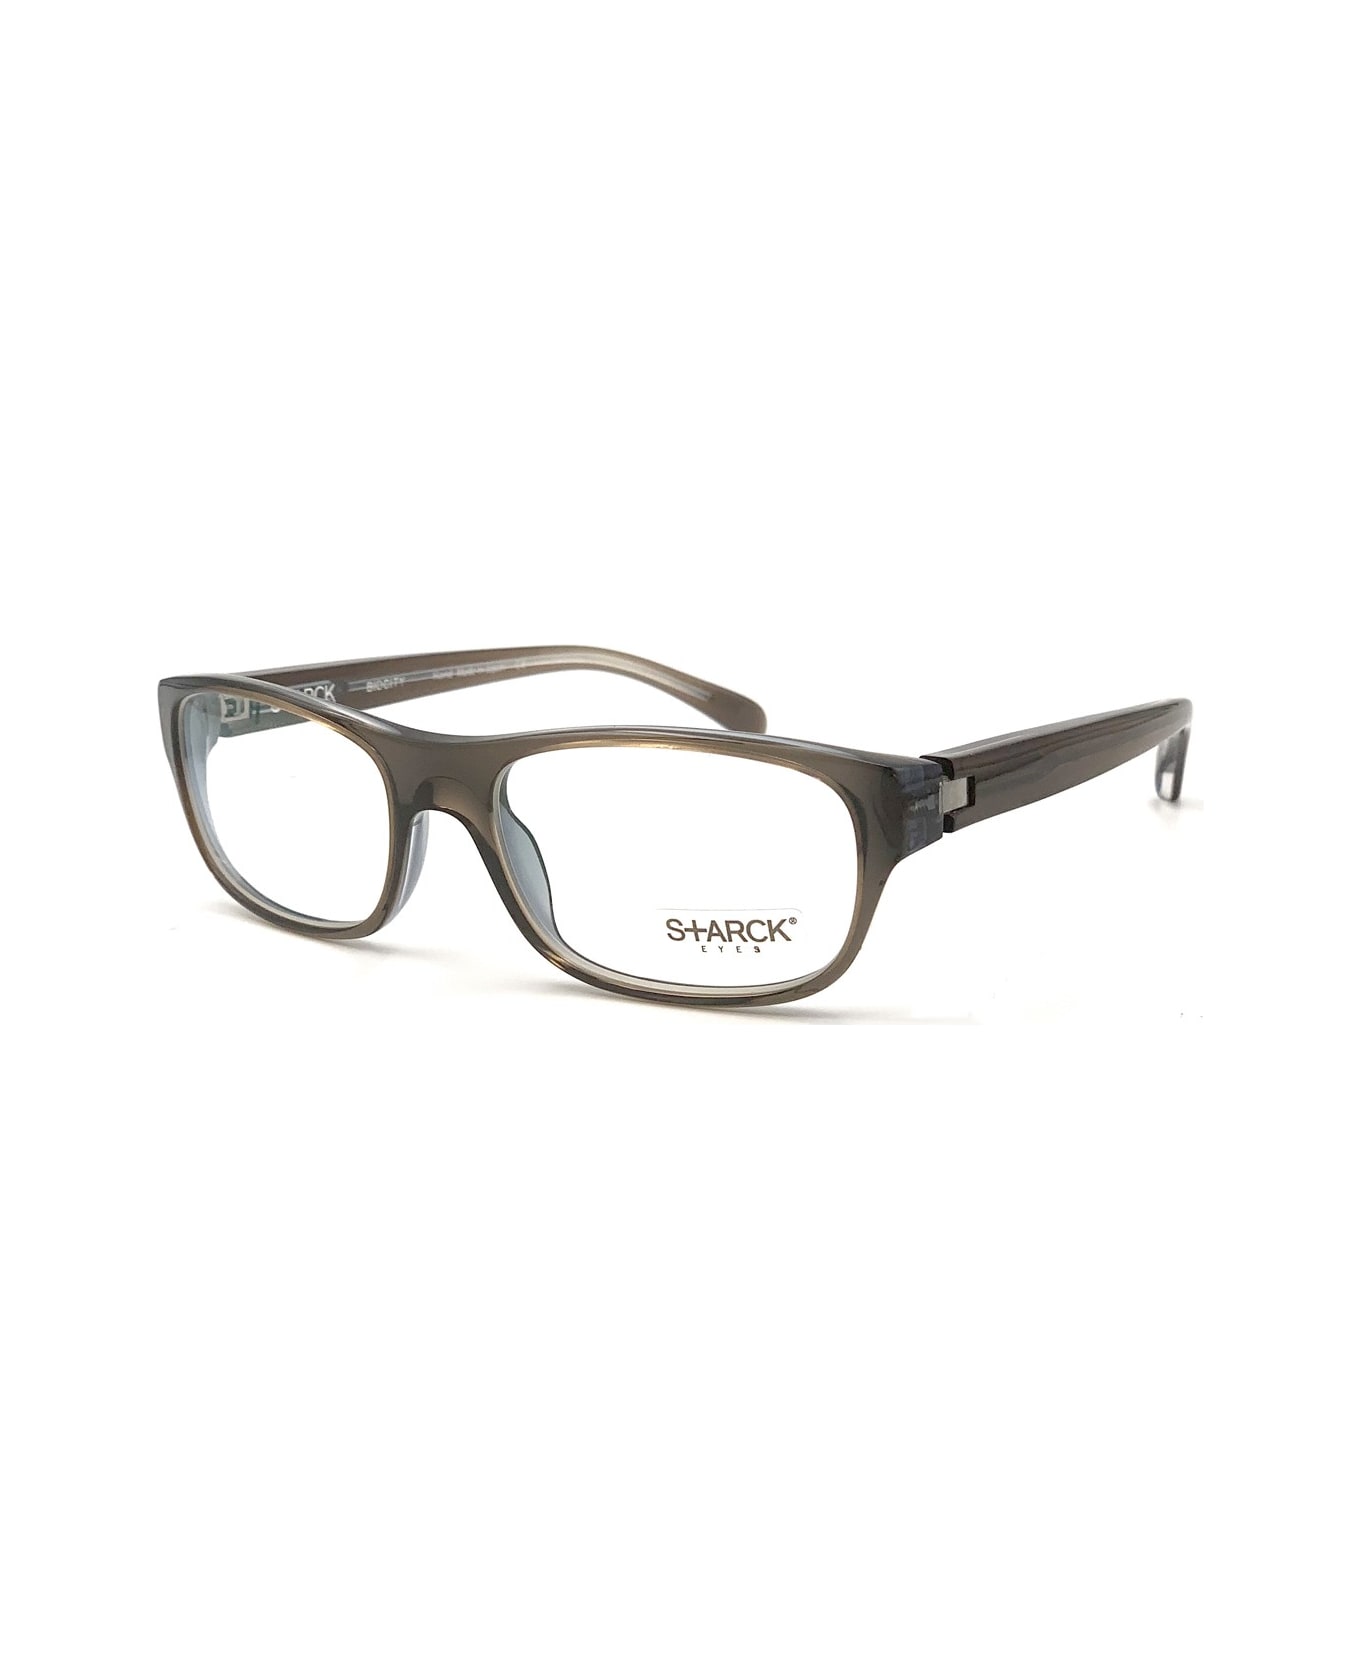 Philippe Starck Pl 1001 Glasses - Grigio